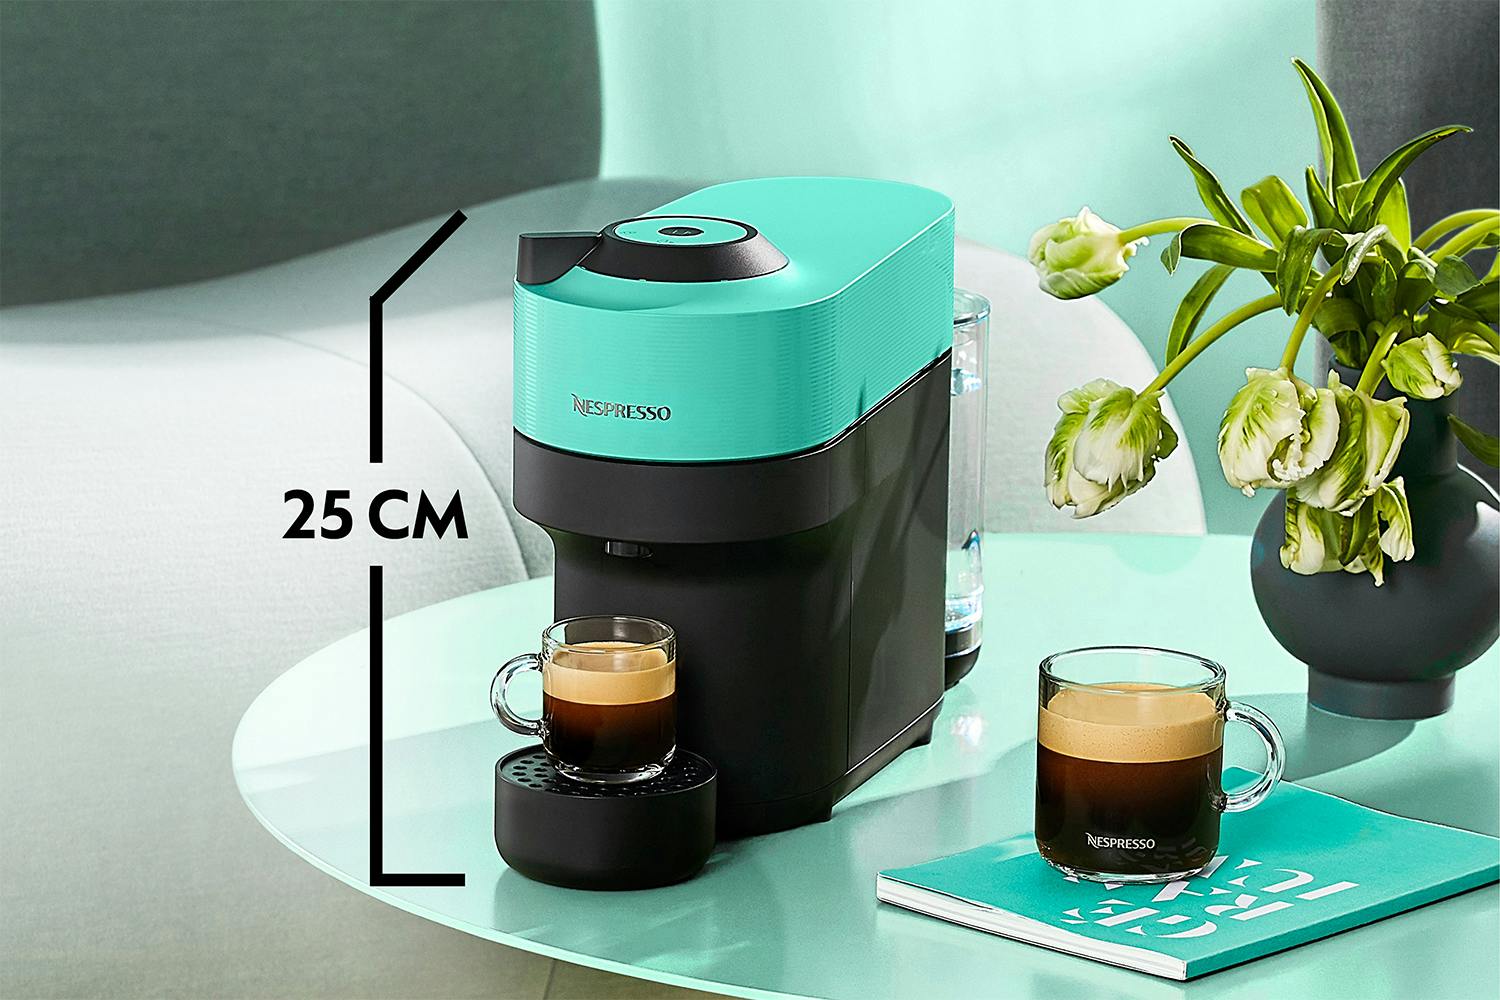 Nespresso, Krups, POD coffee machine, mint, XN920440MI